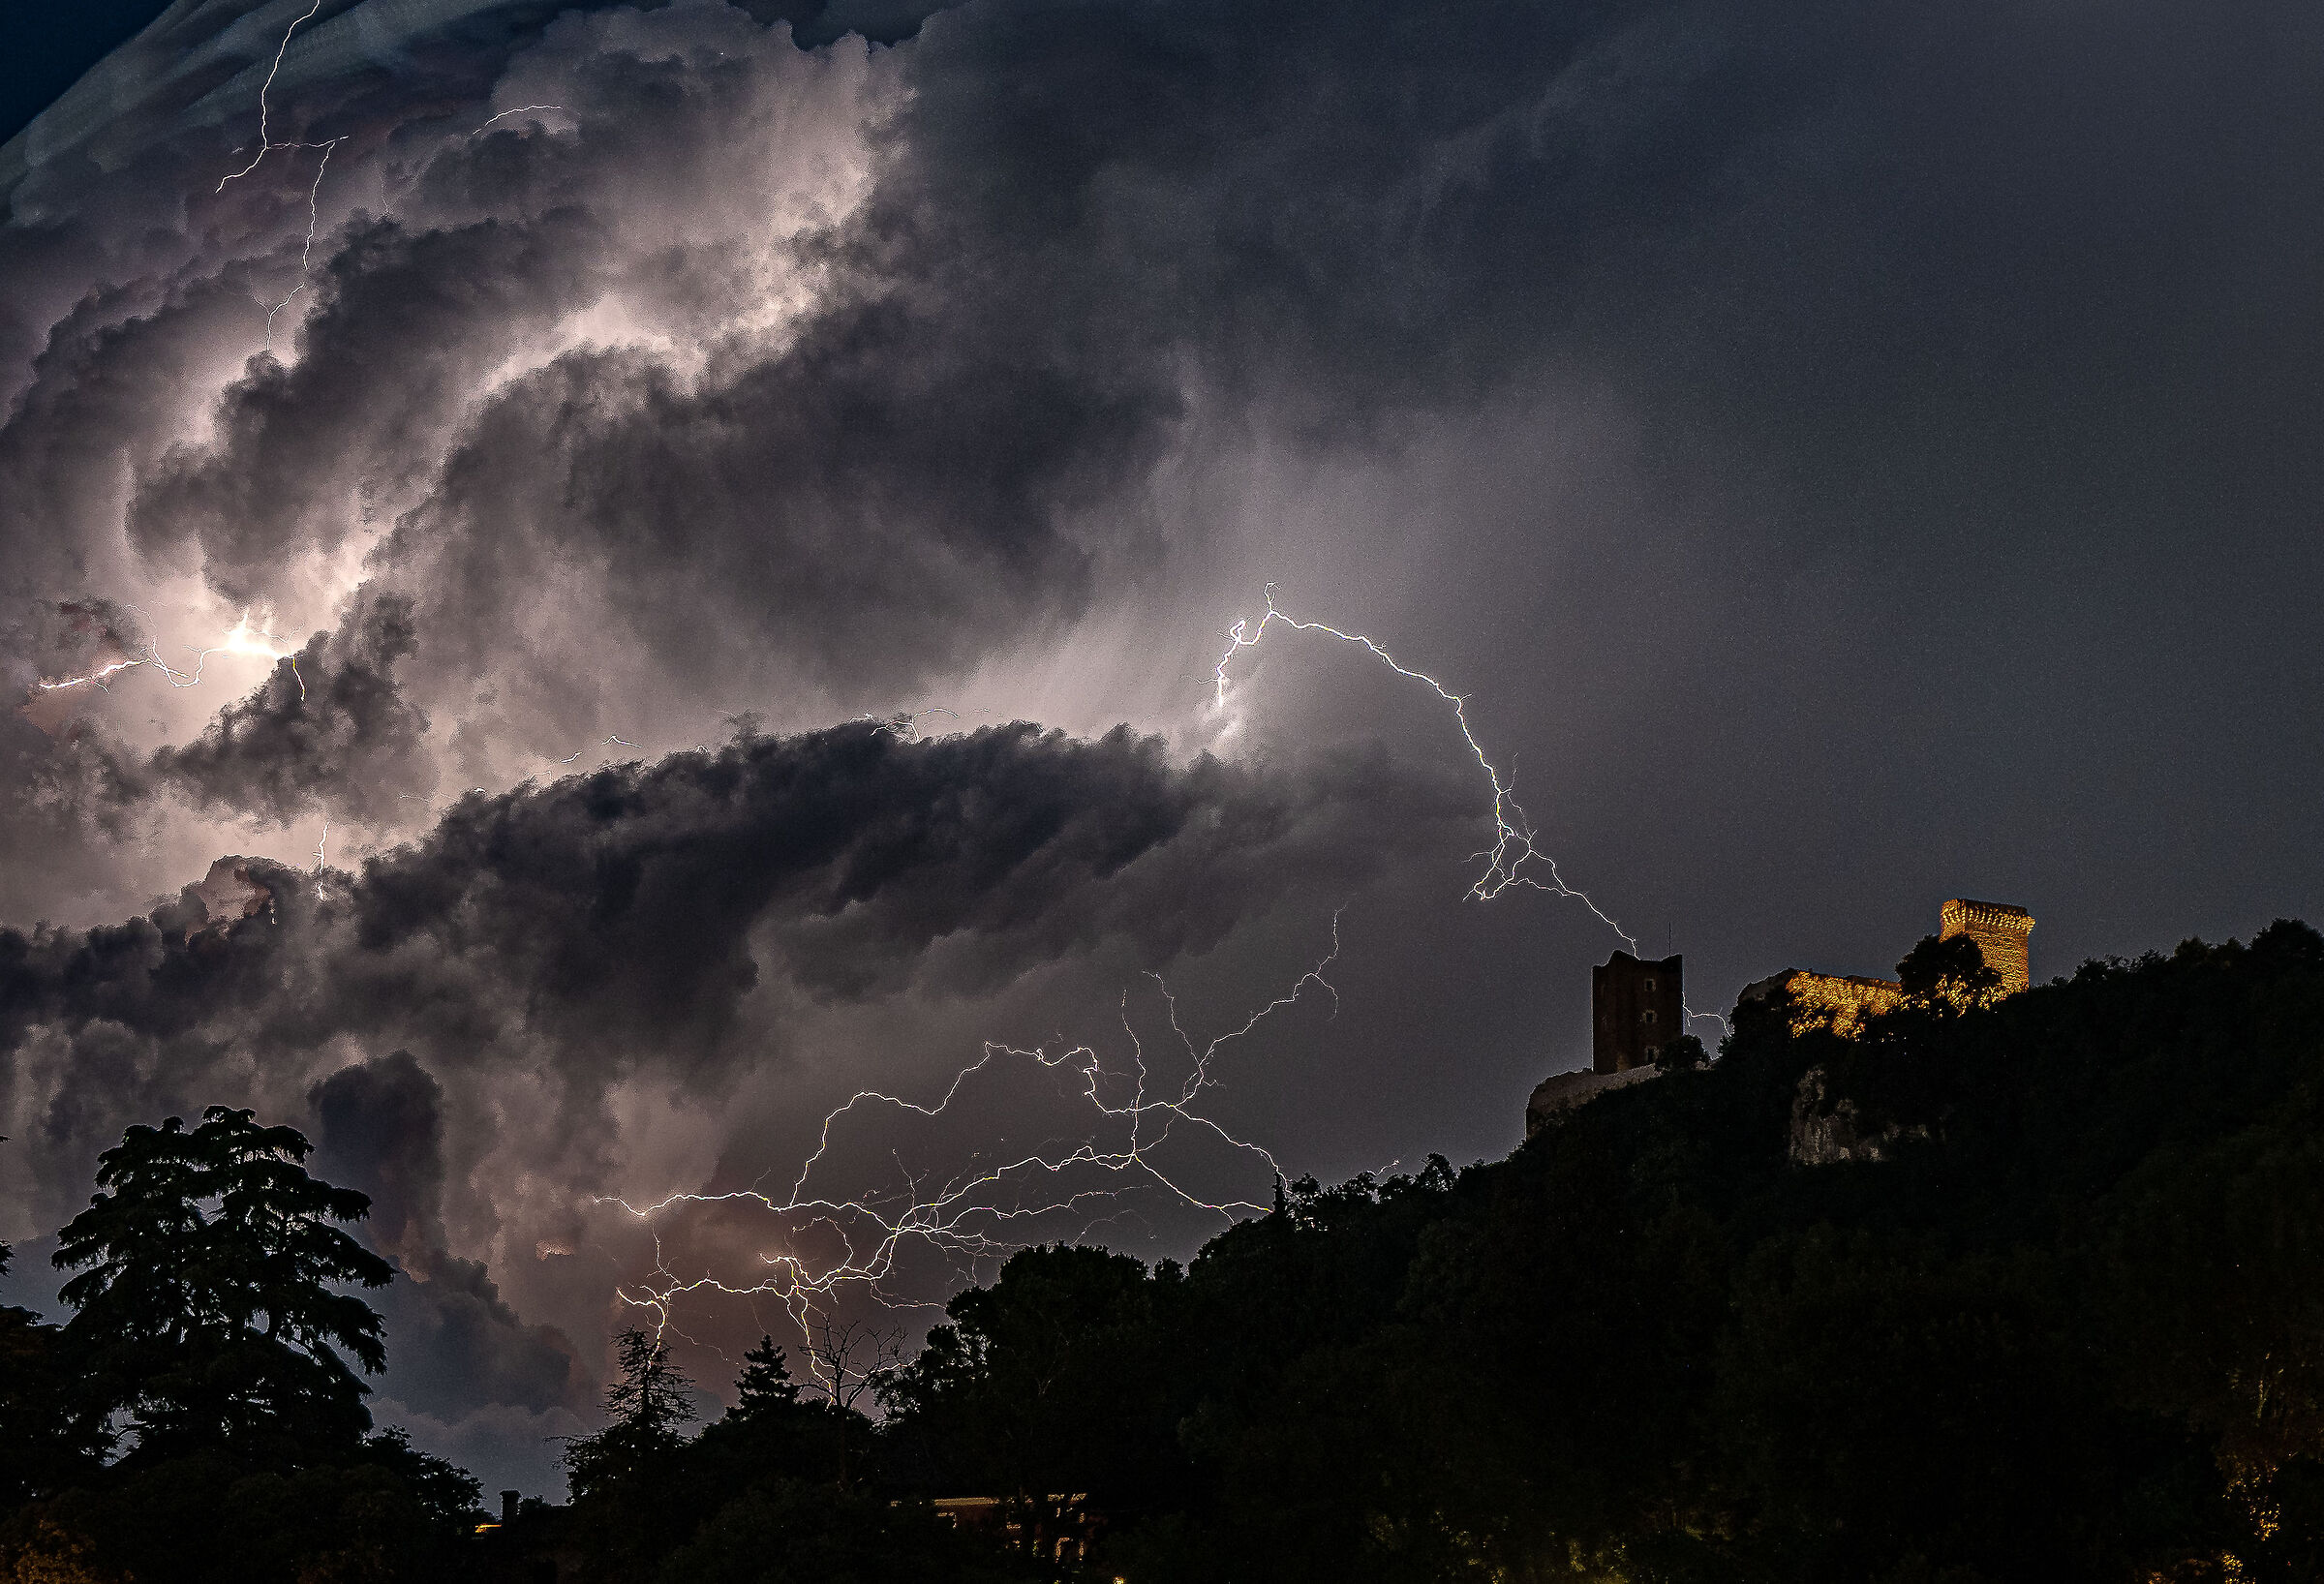 lightning strikes on the castle...